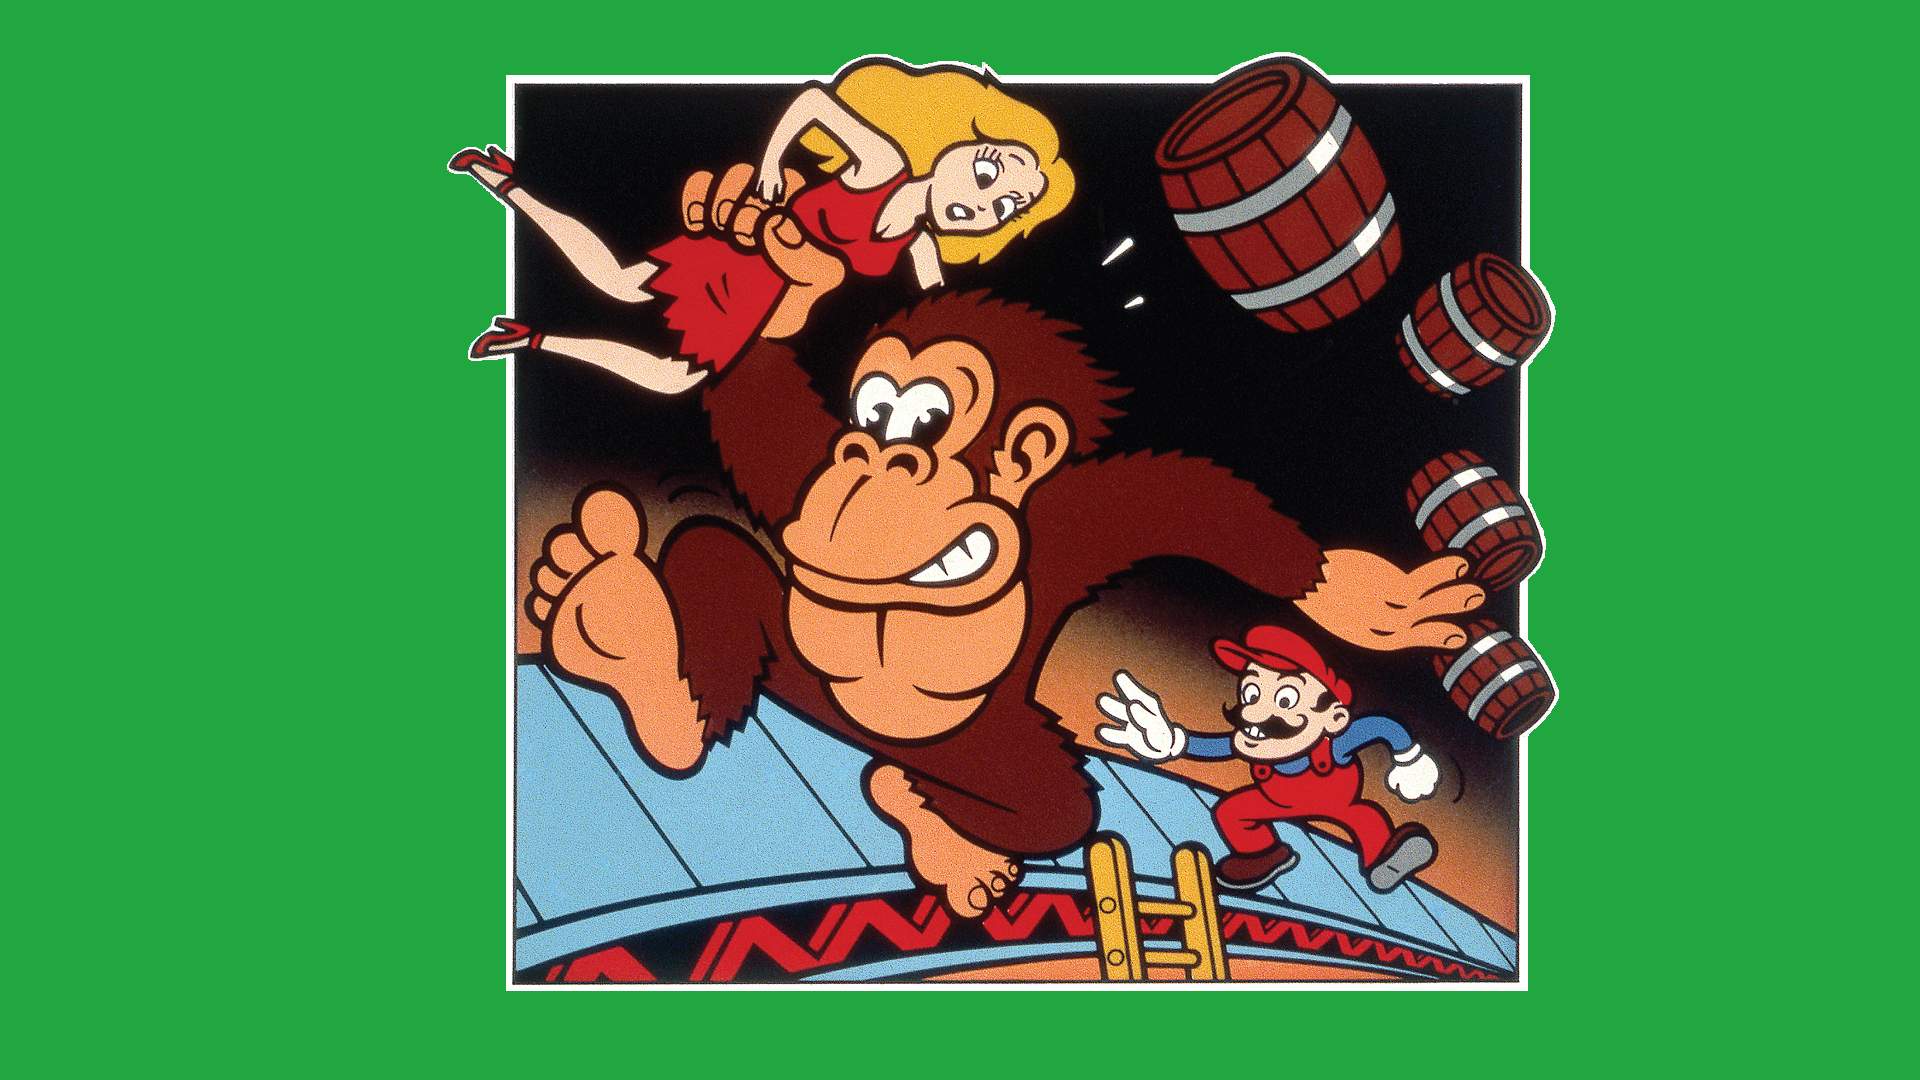 Donkey Kong (Atarisoft)